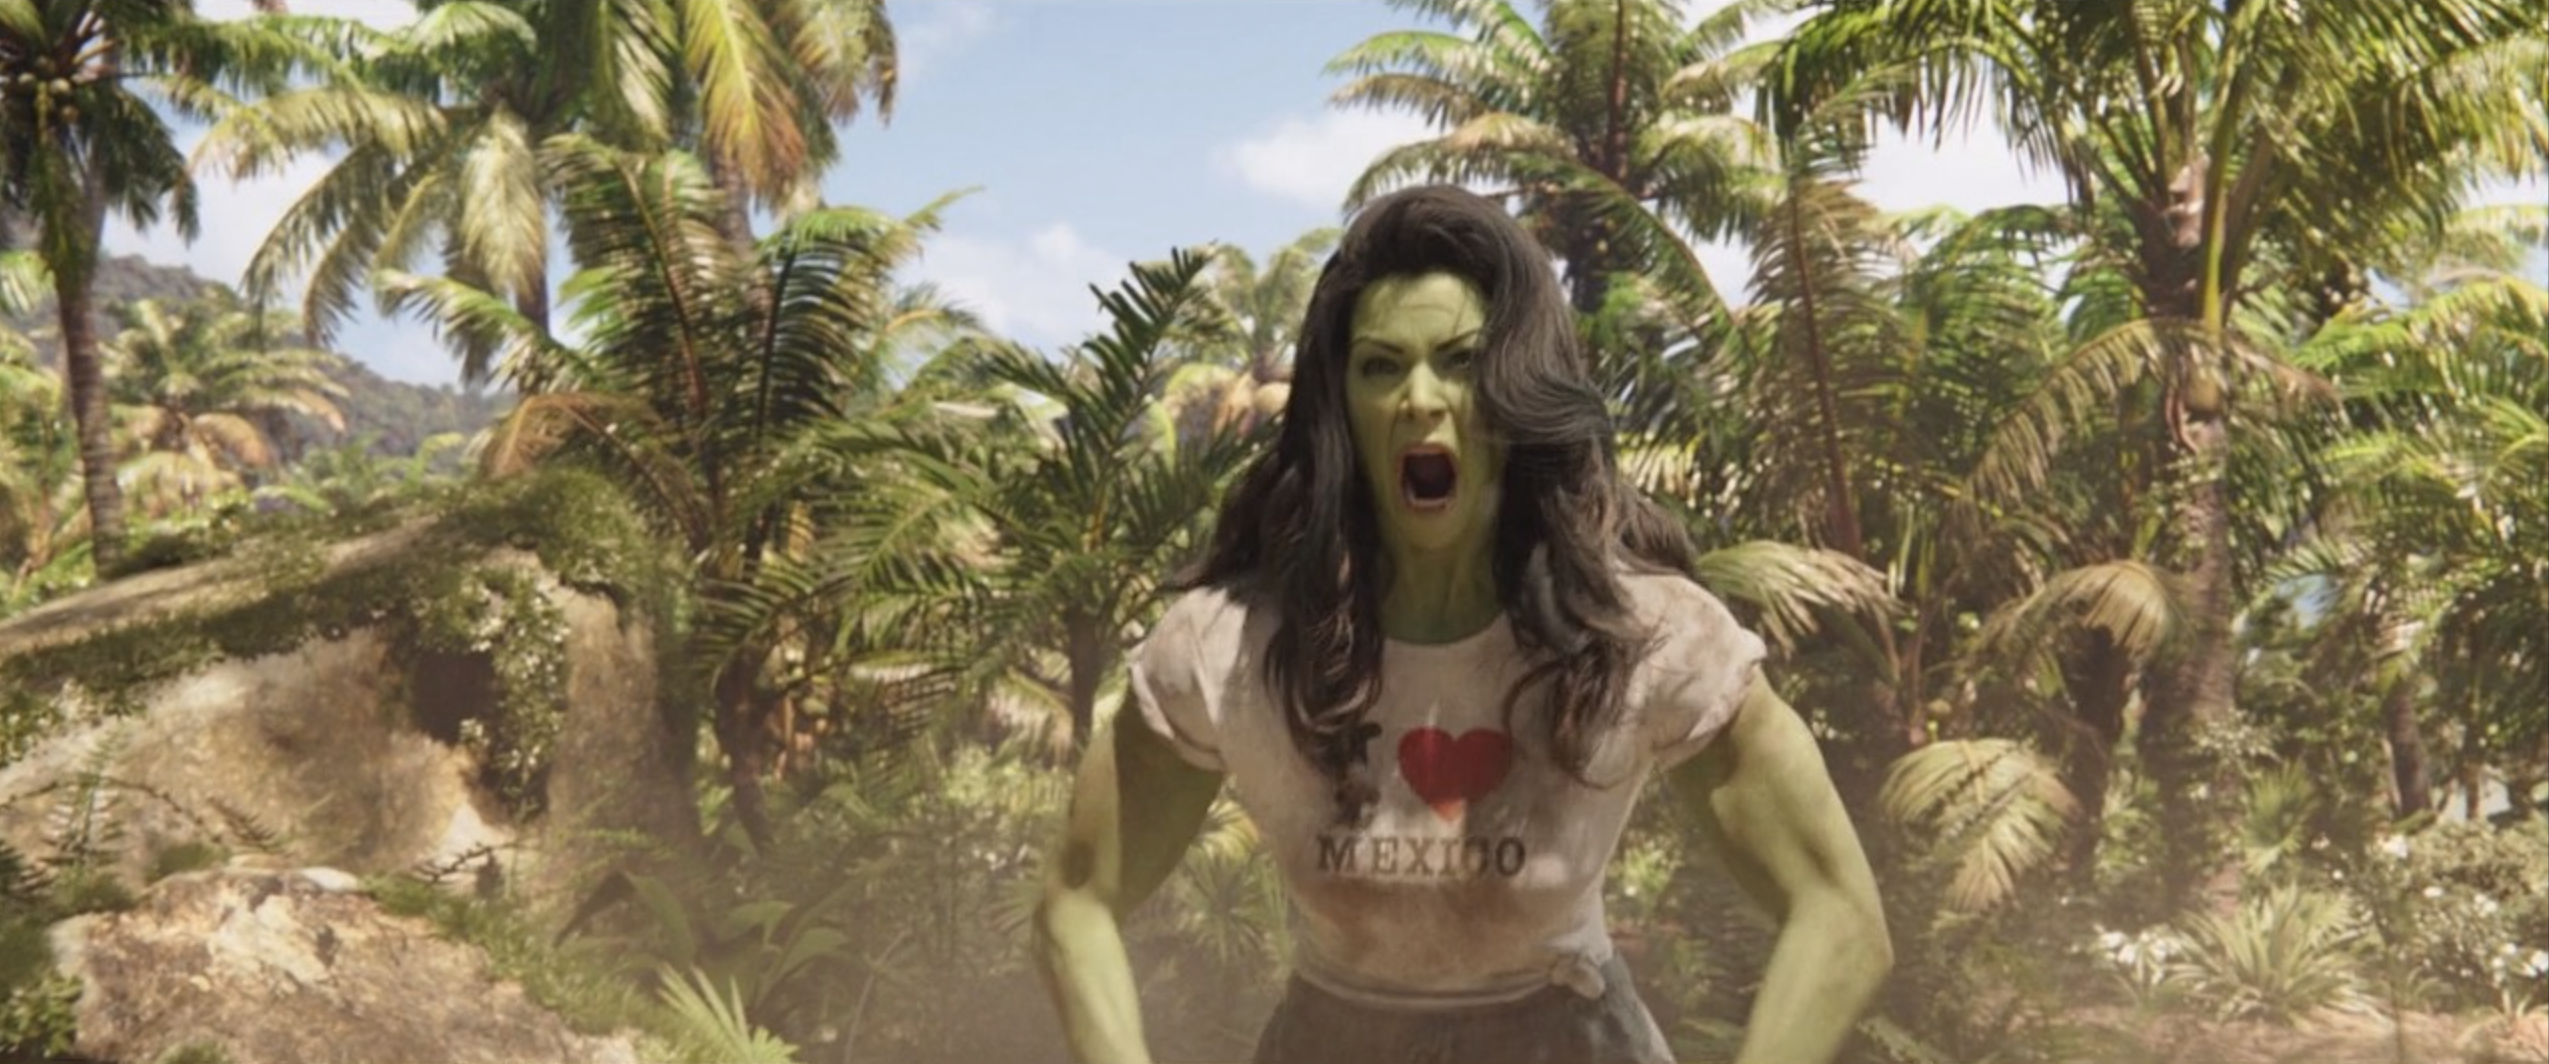 she-hulk screams in she-hulk: attorney at law, she-hulk 1x01